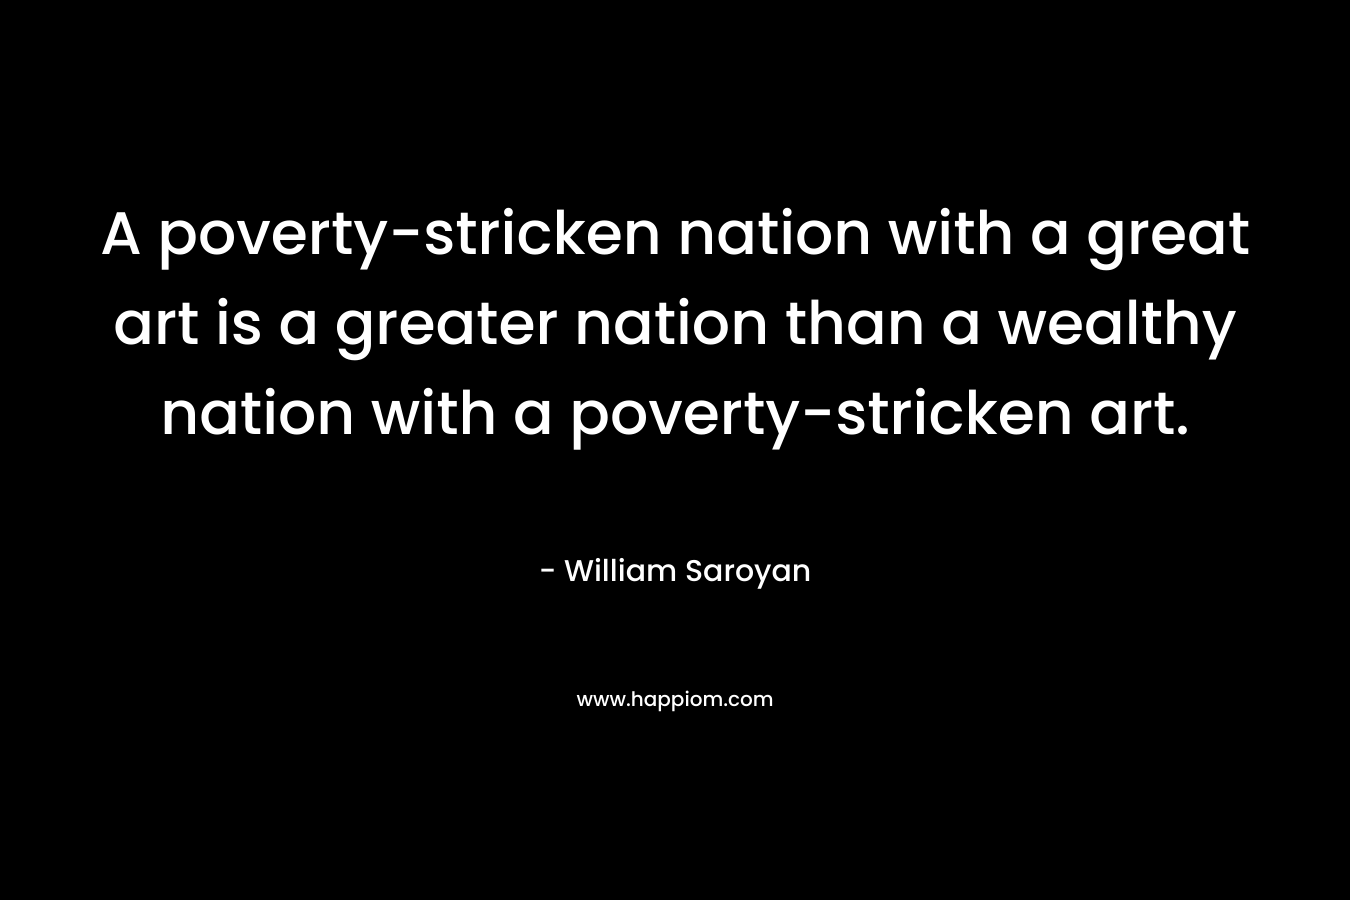 A poverty-stricken nation with a great art is a greater nation than a wealthy nation with a poverty-stricken art. – William Saroyan